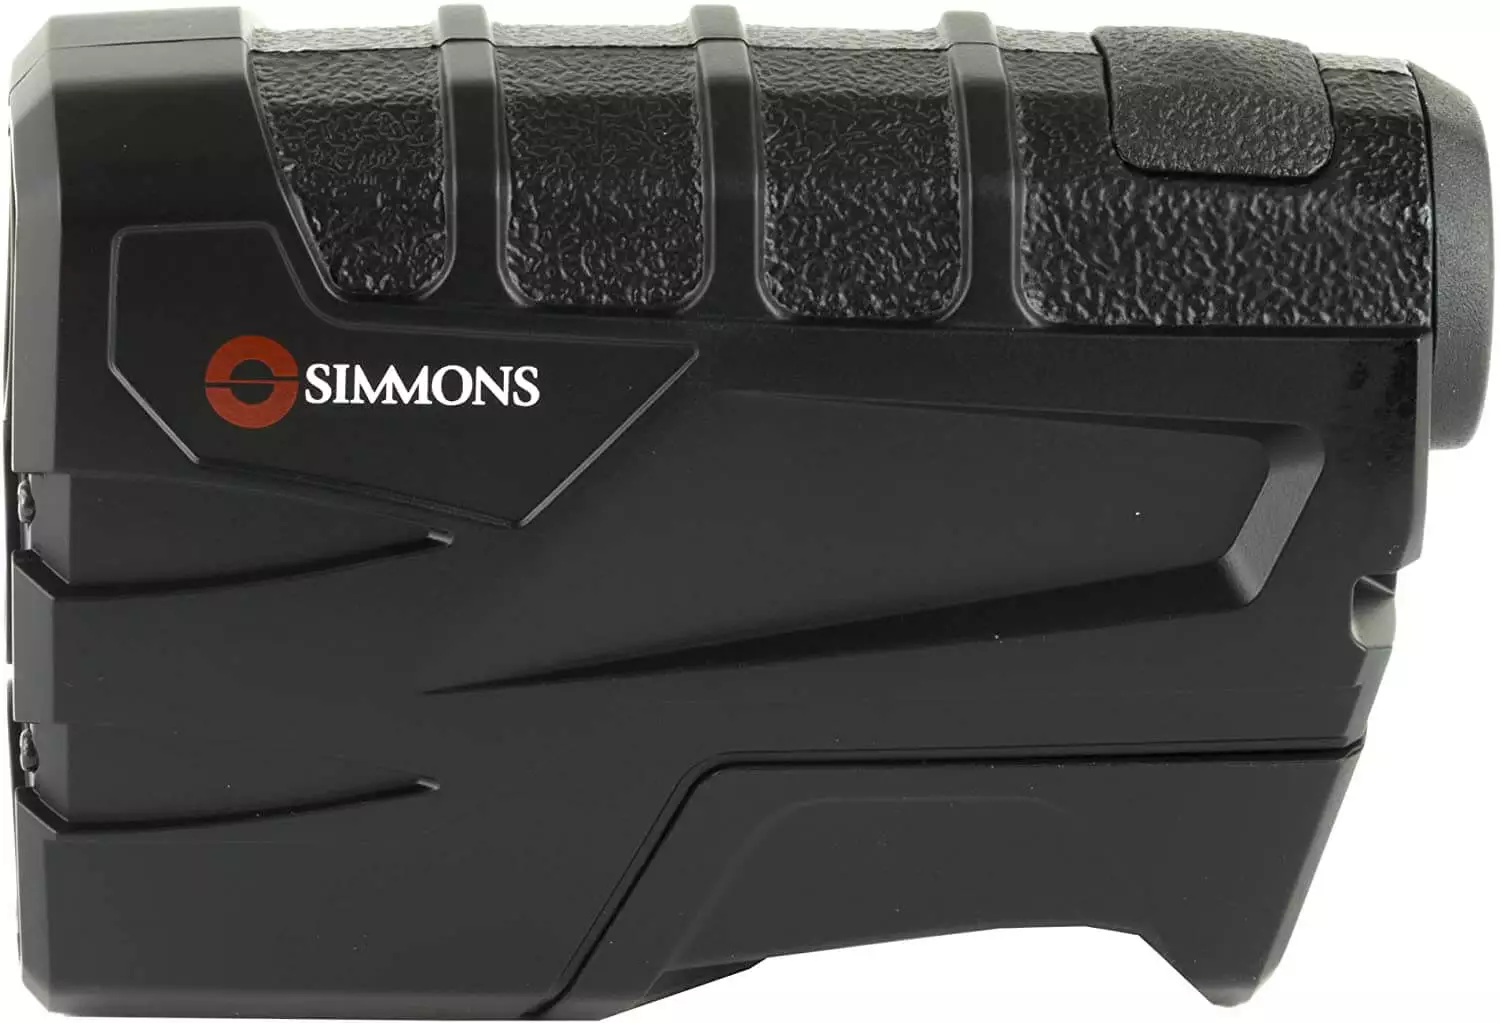 simmons volt 600 – best rangefinder under 200 dollars